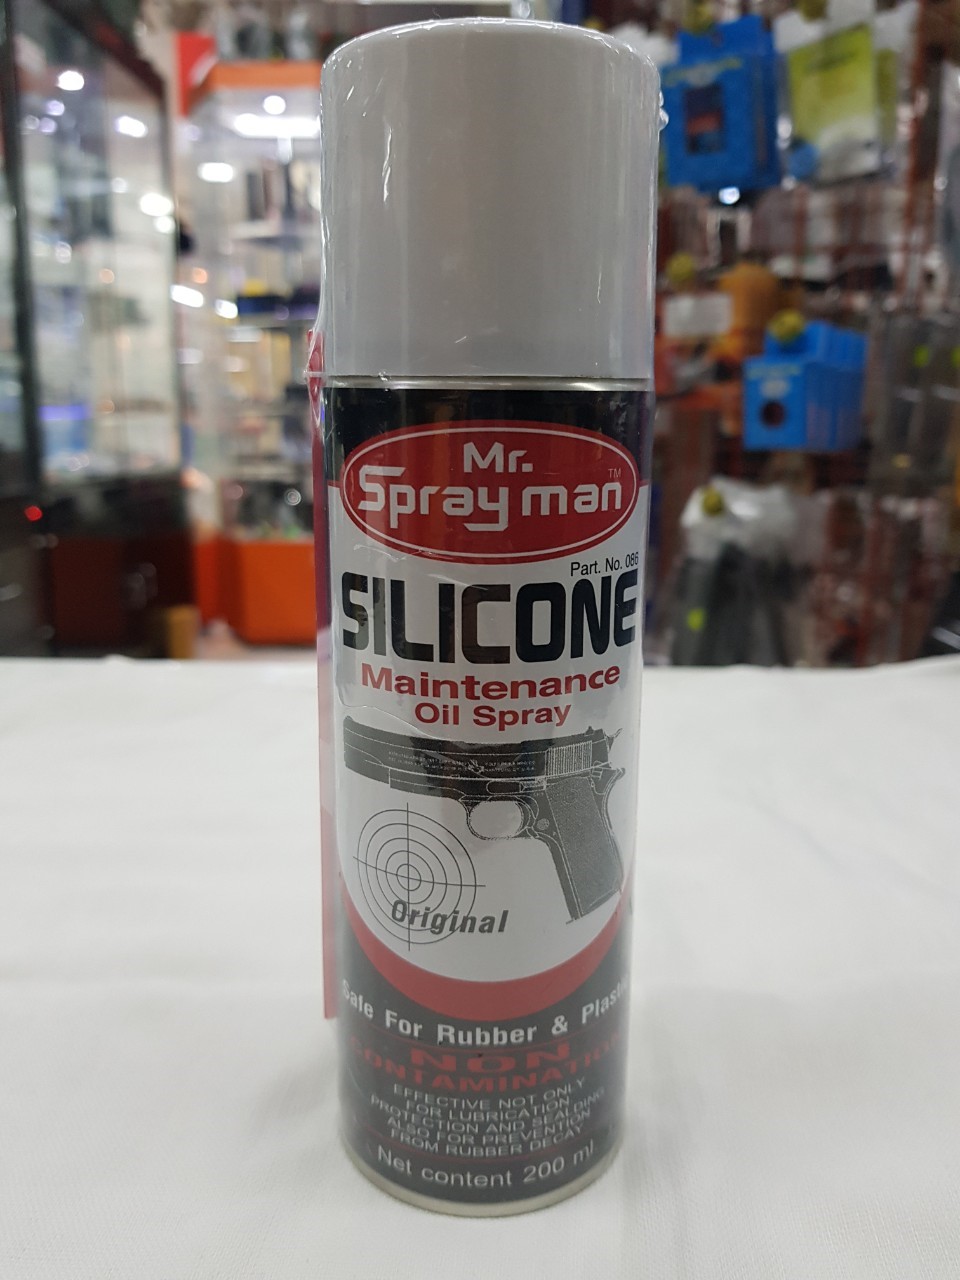 สเปรย์ซิลิโคน Silicone ยี่ห้อ Mr. Spray man สำหรับฉีดดูแลปืนบีบีกันมีปริมาณ 200 ml